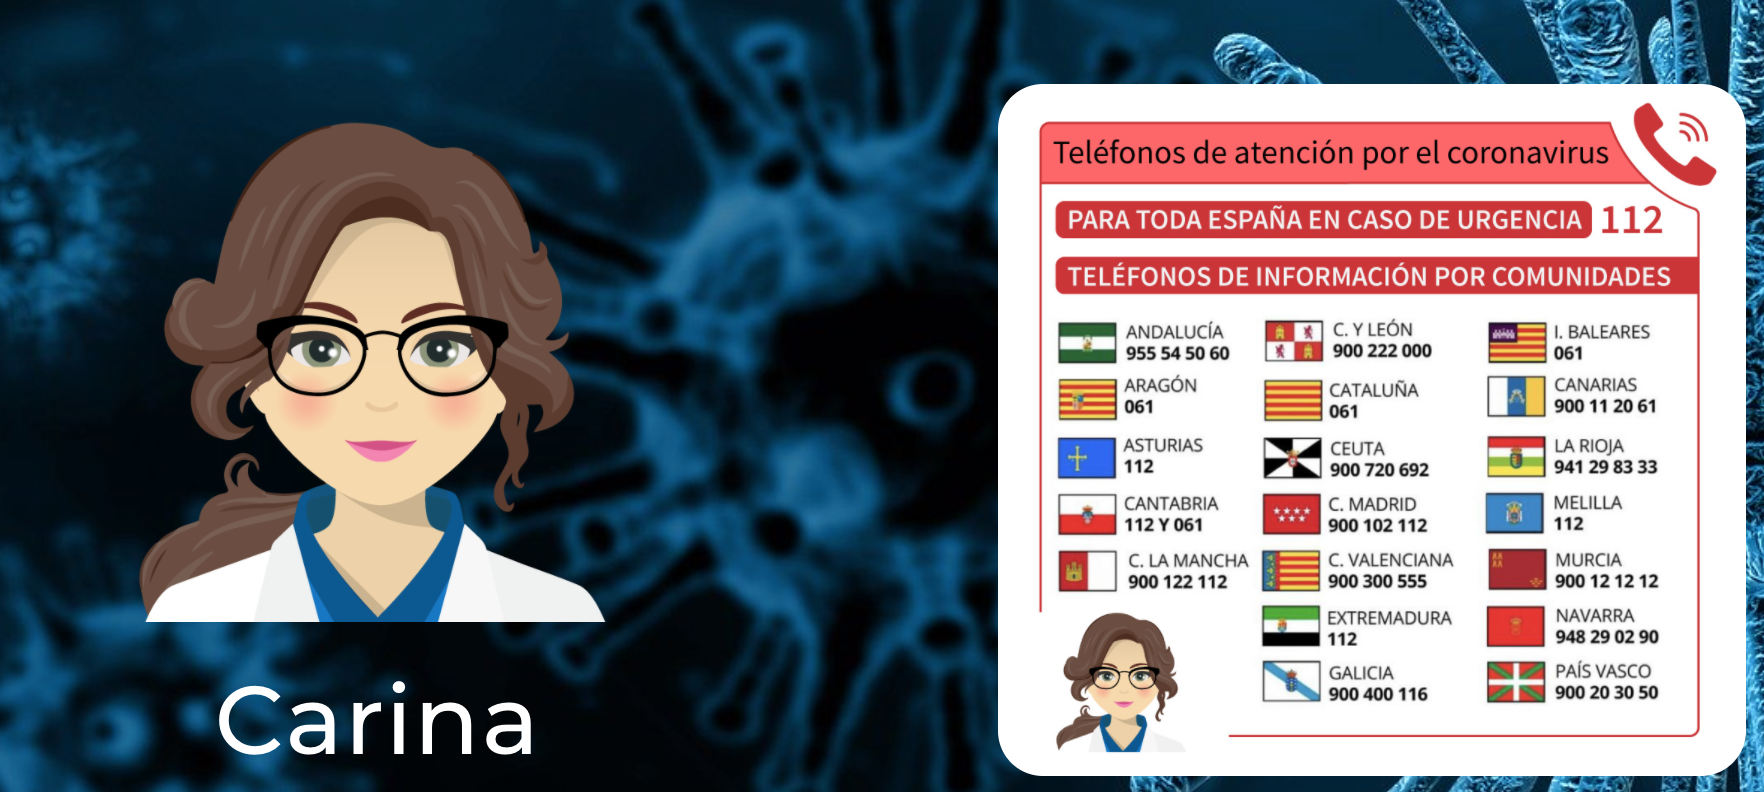 Teléfonos de atención por coronavirus en España